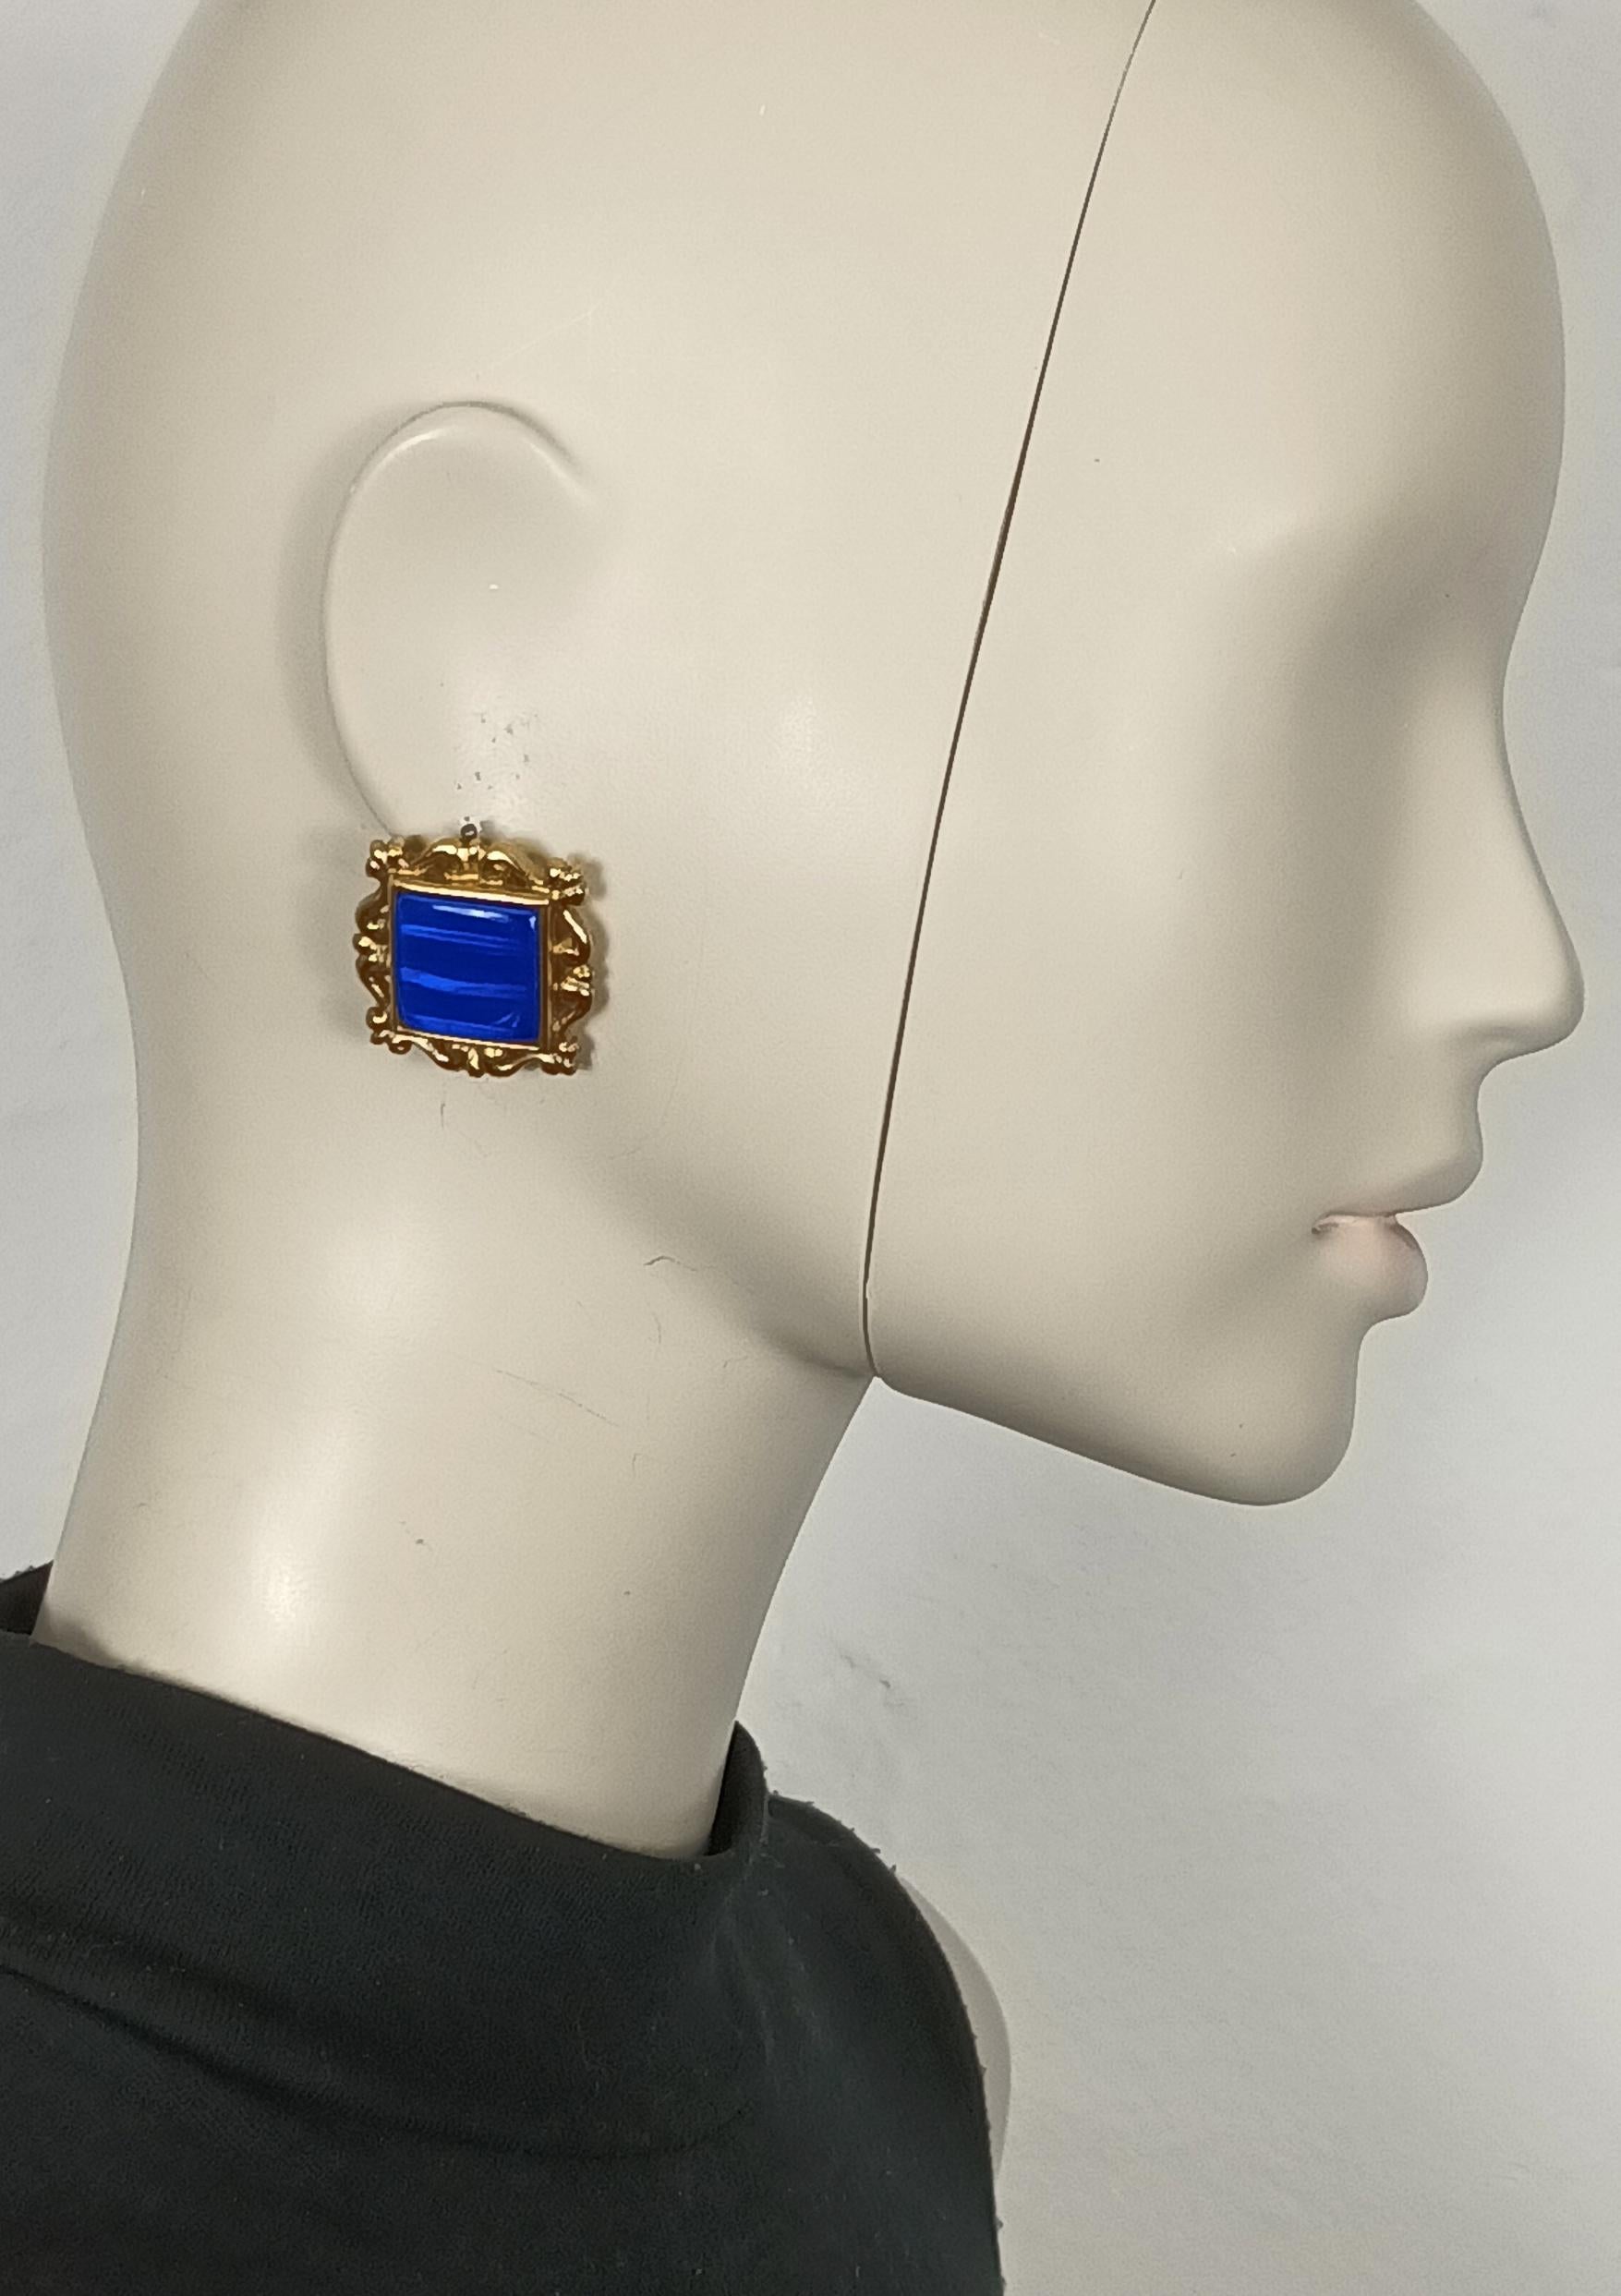 YVES SAINT LAURENT Vintage-Ohrringe in Goldton mit einem quadratischen, blau schillernden Harz-Cabochon in der Mitte.

Geprägtes YSL Made in France.

Ungefähre Maße: max. 2,9 cm x max. 2,9 cm (1,14 Zoll x 1,14 Zoll).

Gewicht pro Ohrring: ca. 13